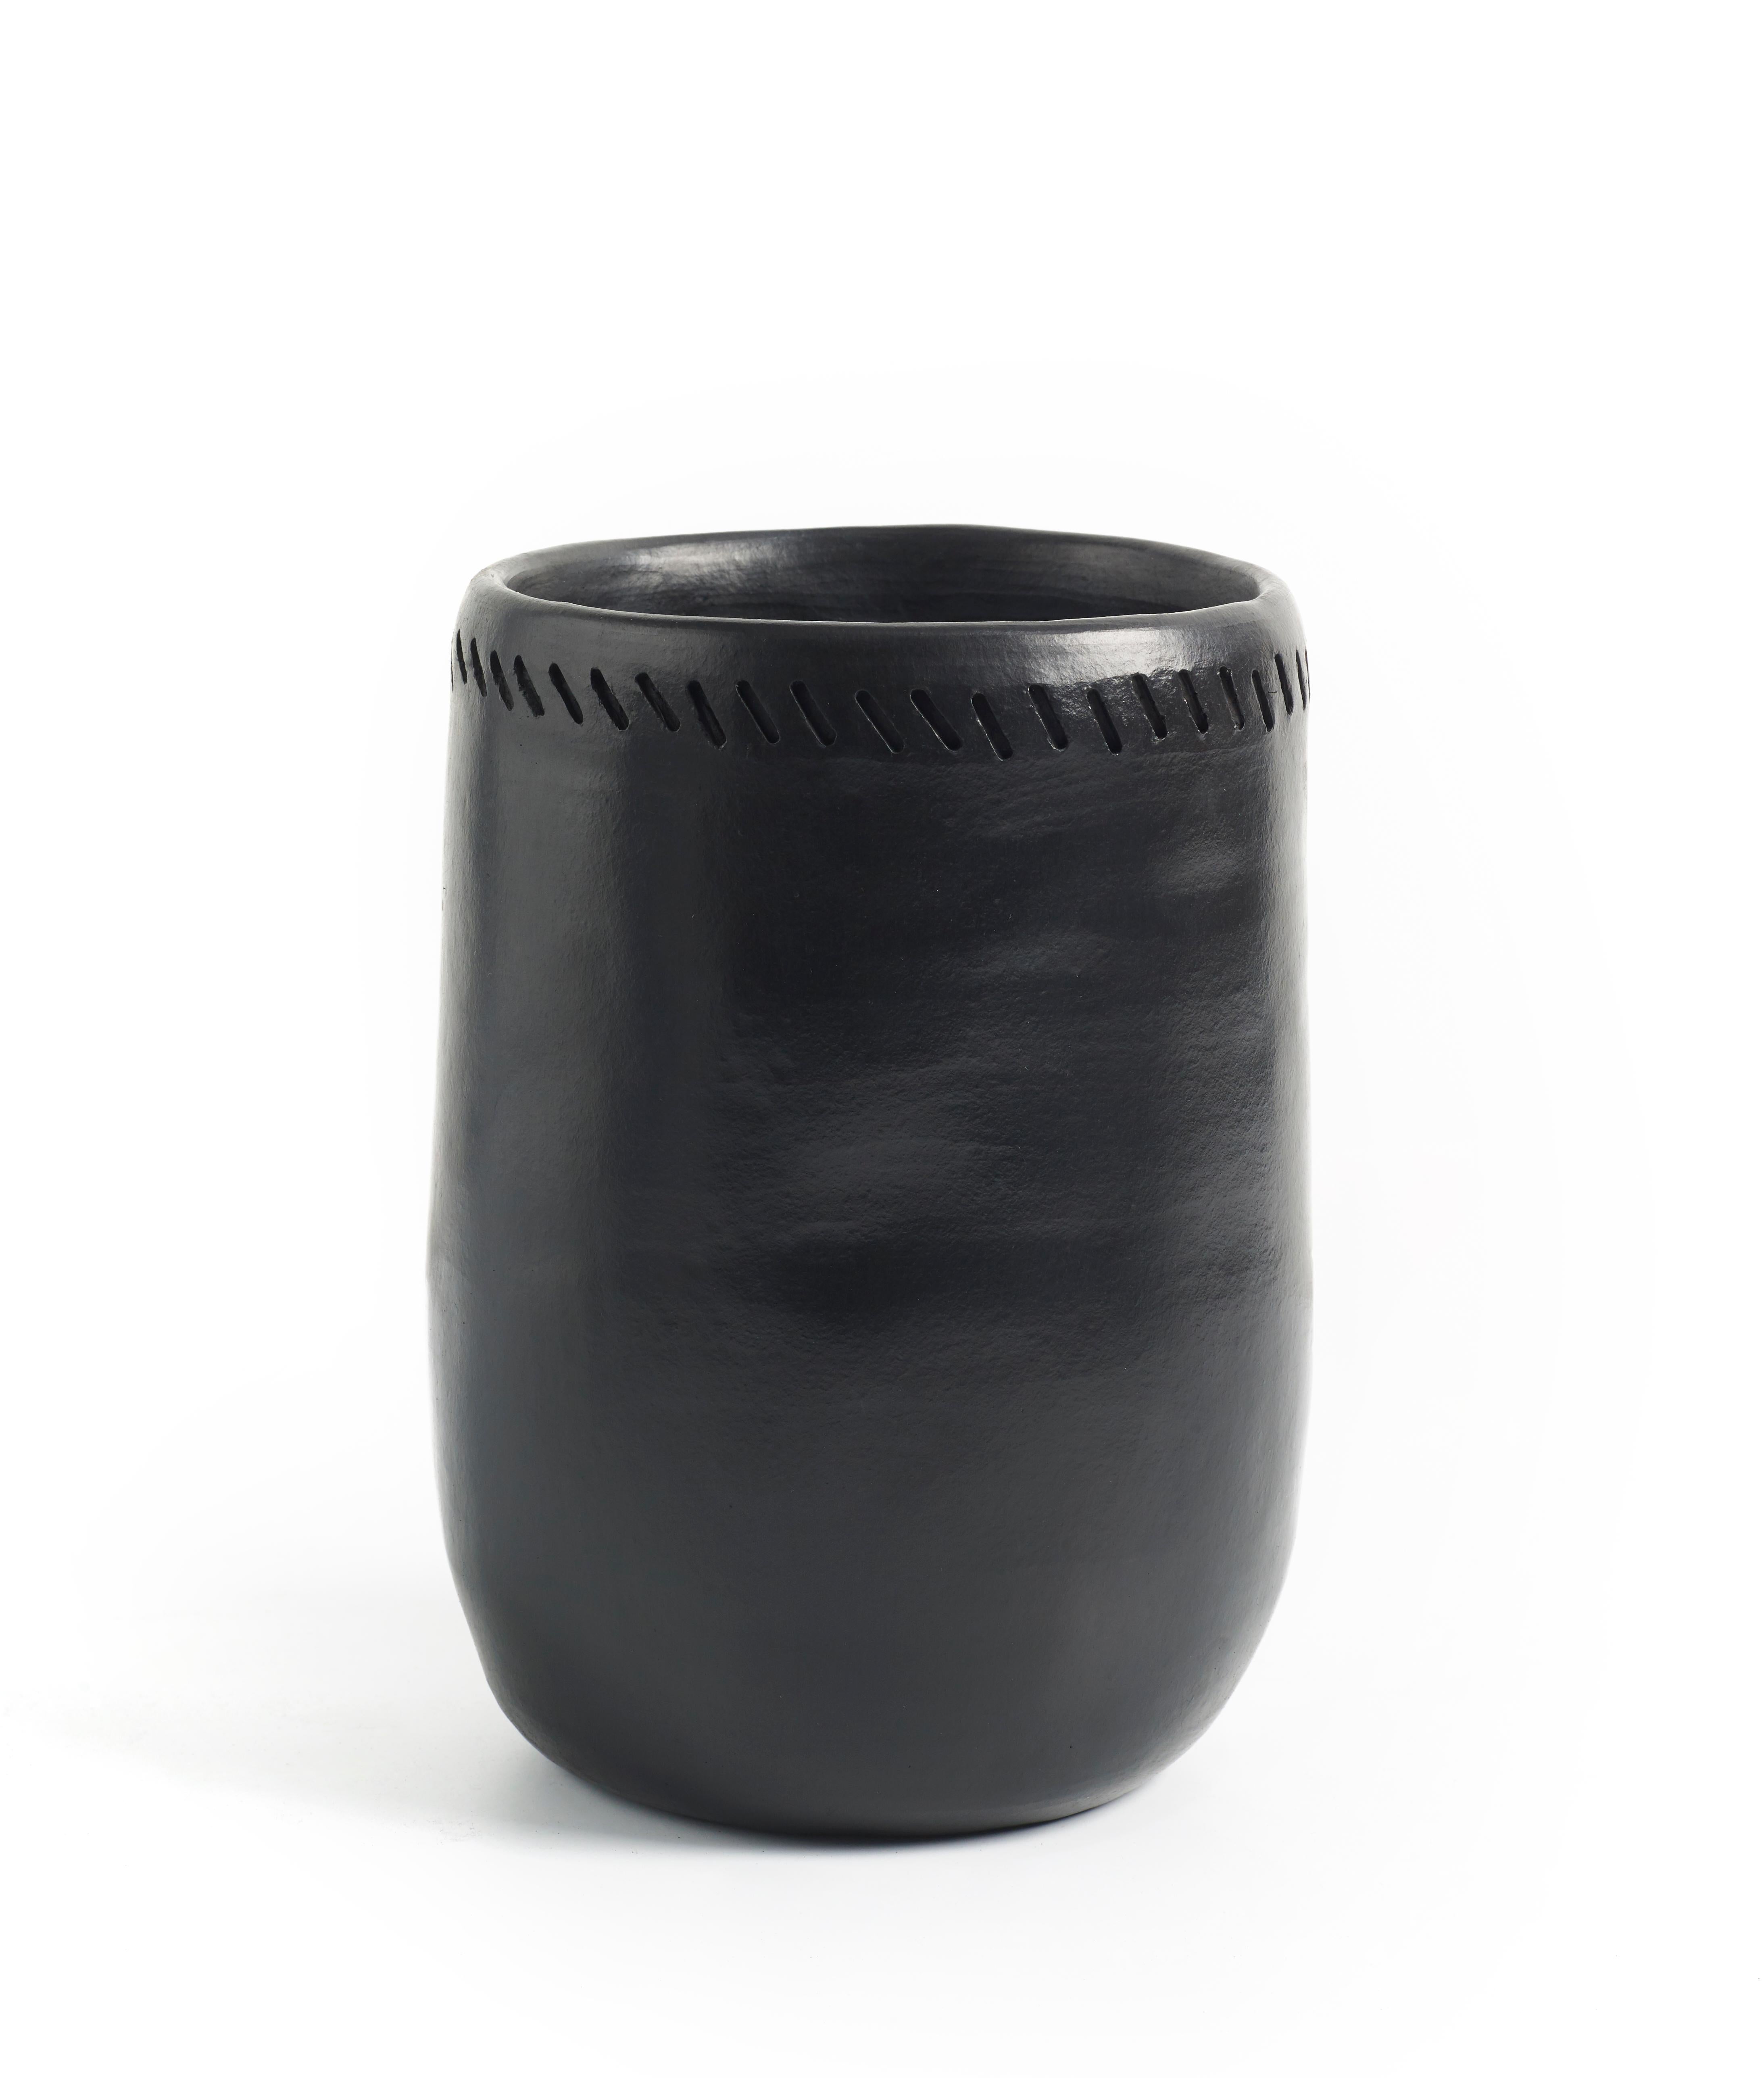 Vase 1 barro esstisch von Sebastian Herkner
MATERIALIEN: Hitzebeständige schwarze Keramik. 
Technik: Glasiert. Im Ofen gegart und mit Halbedelsteinen poliert. 
Abmessungen: Durchmesser 12 cm x H 20 cm 
Erhältlich in Größe Large. Kontaktieren Sie